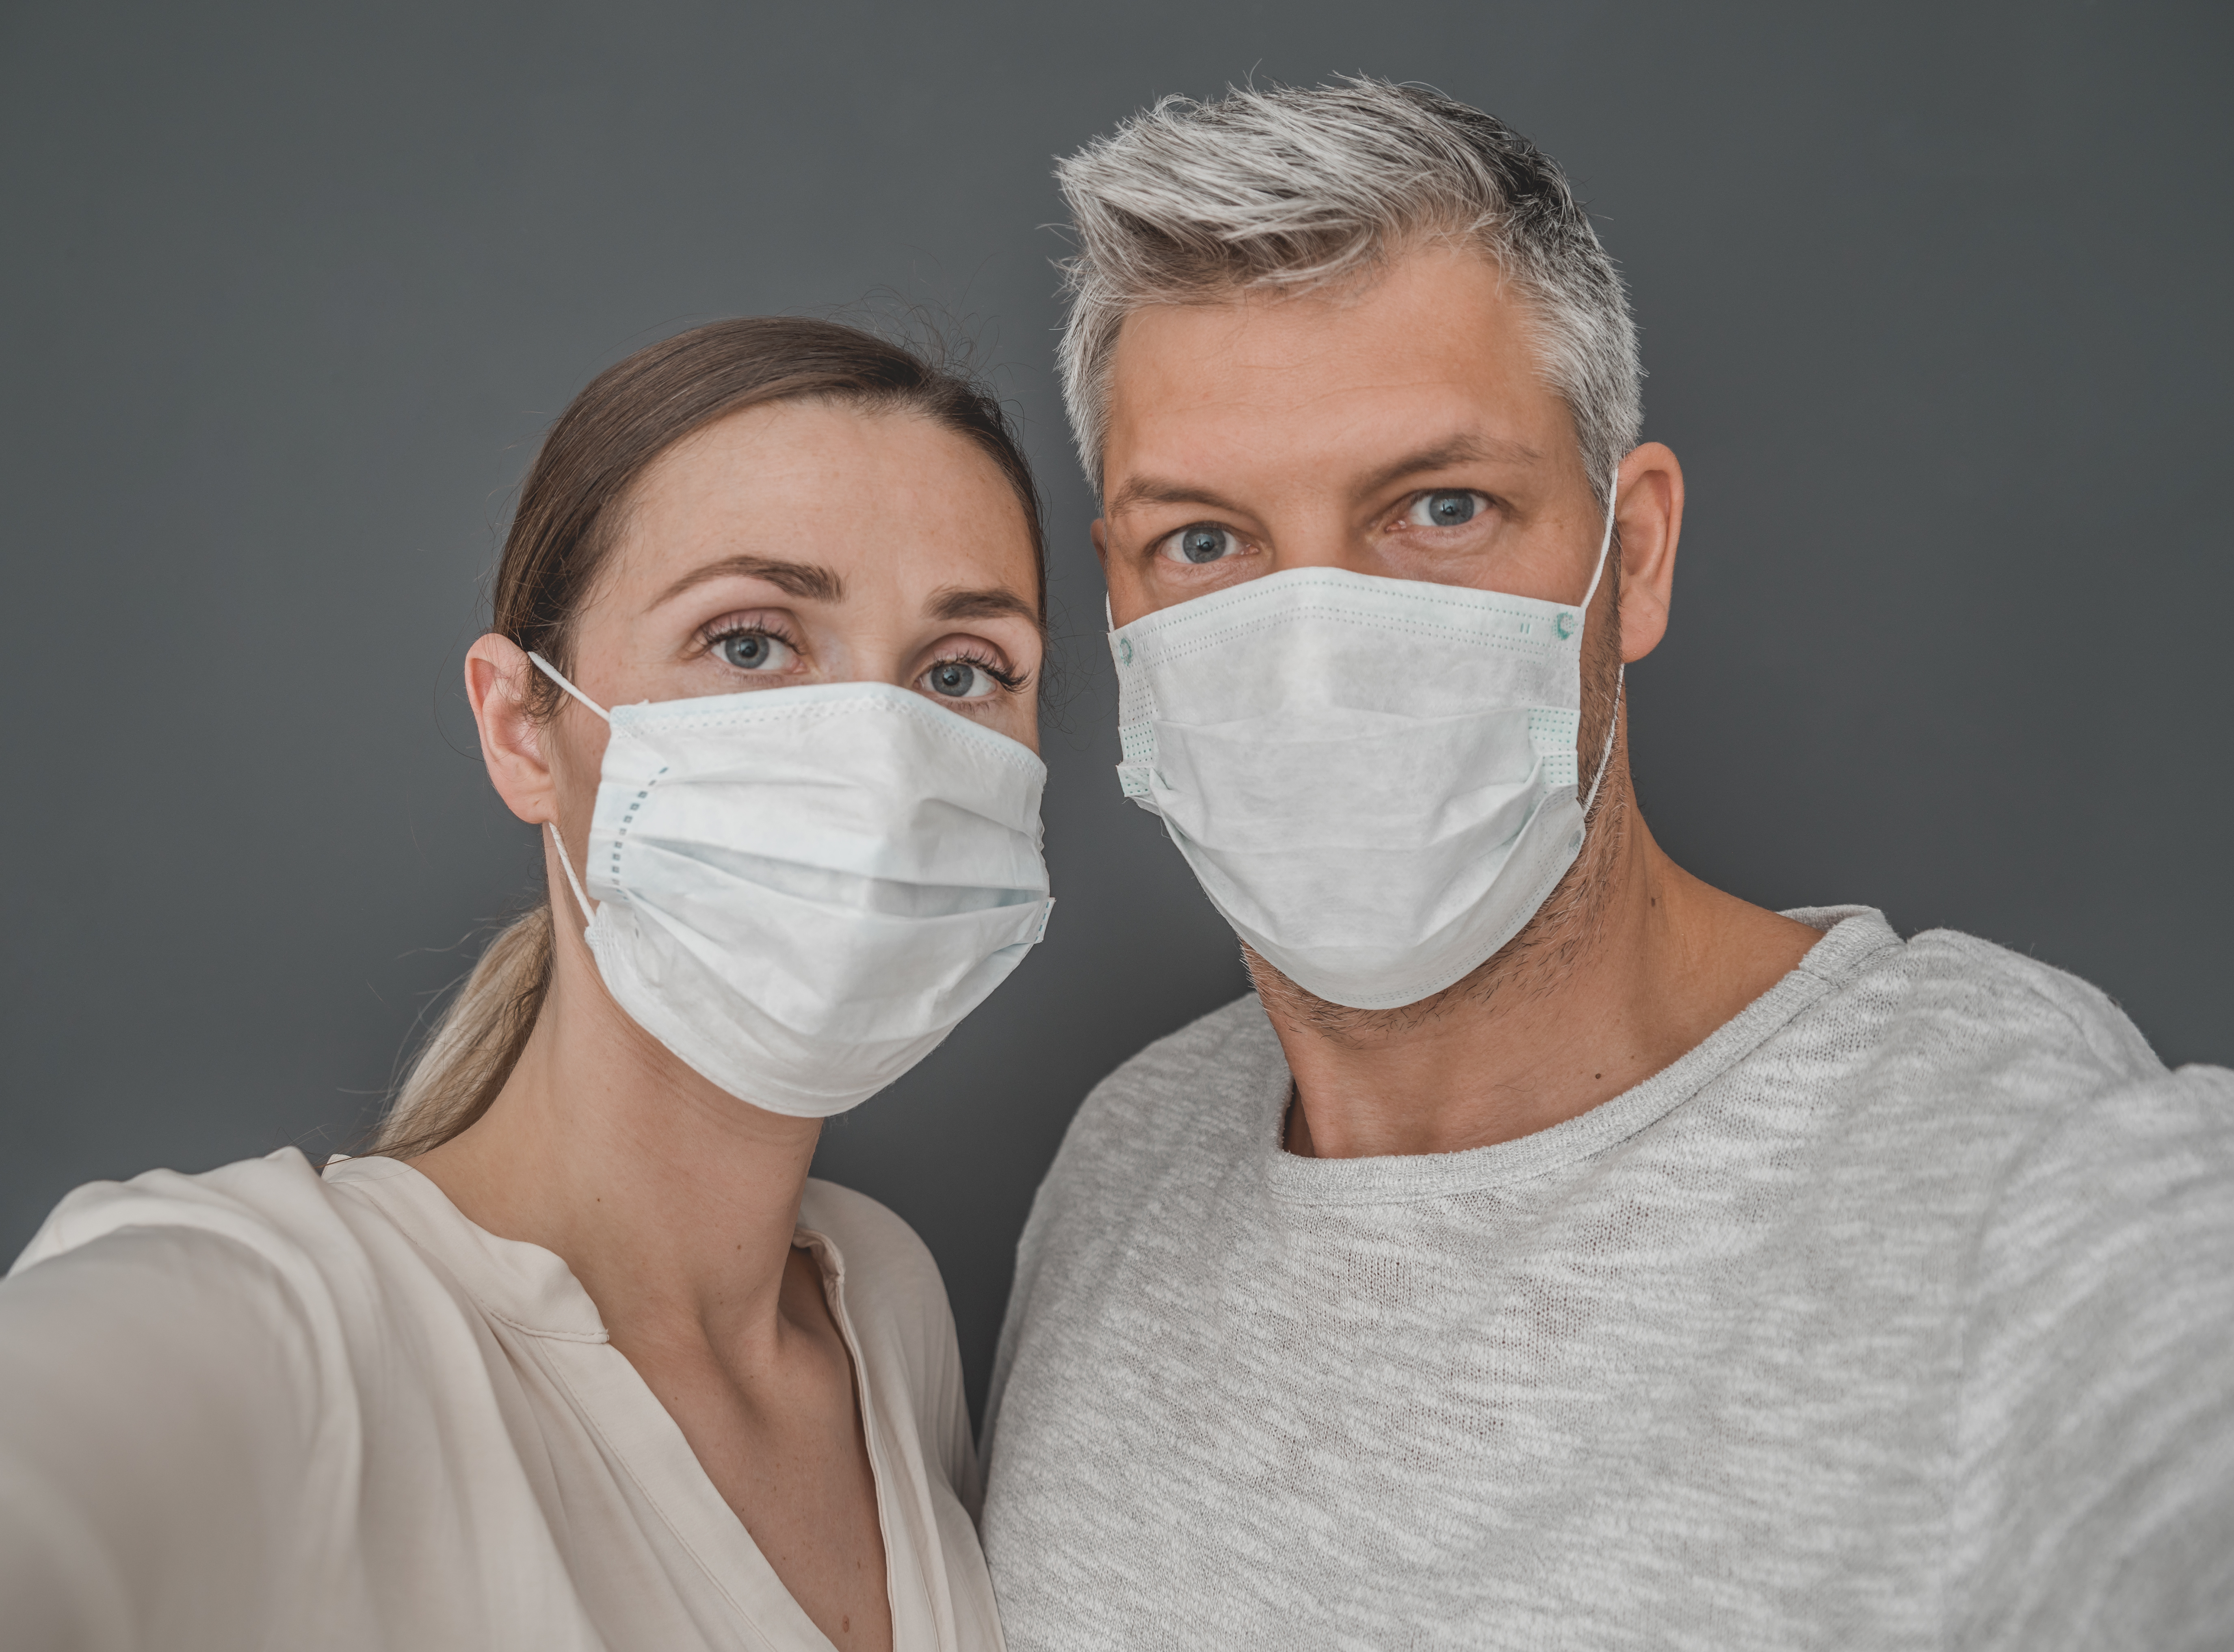 Cerrahi tulum ve maske ihracatında hibe şartı kaldırılsın çağrısı